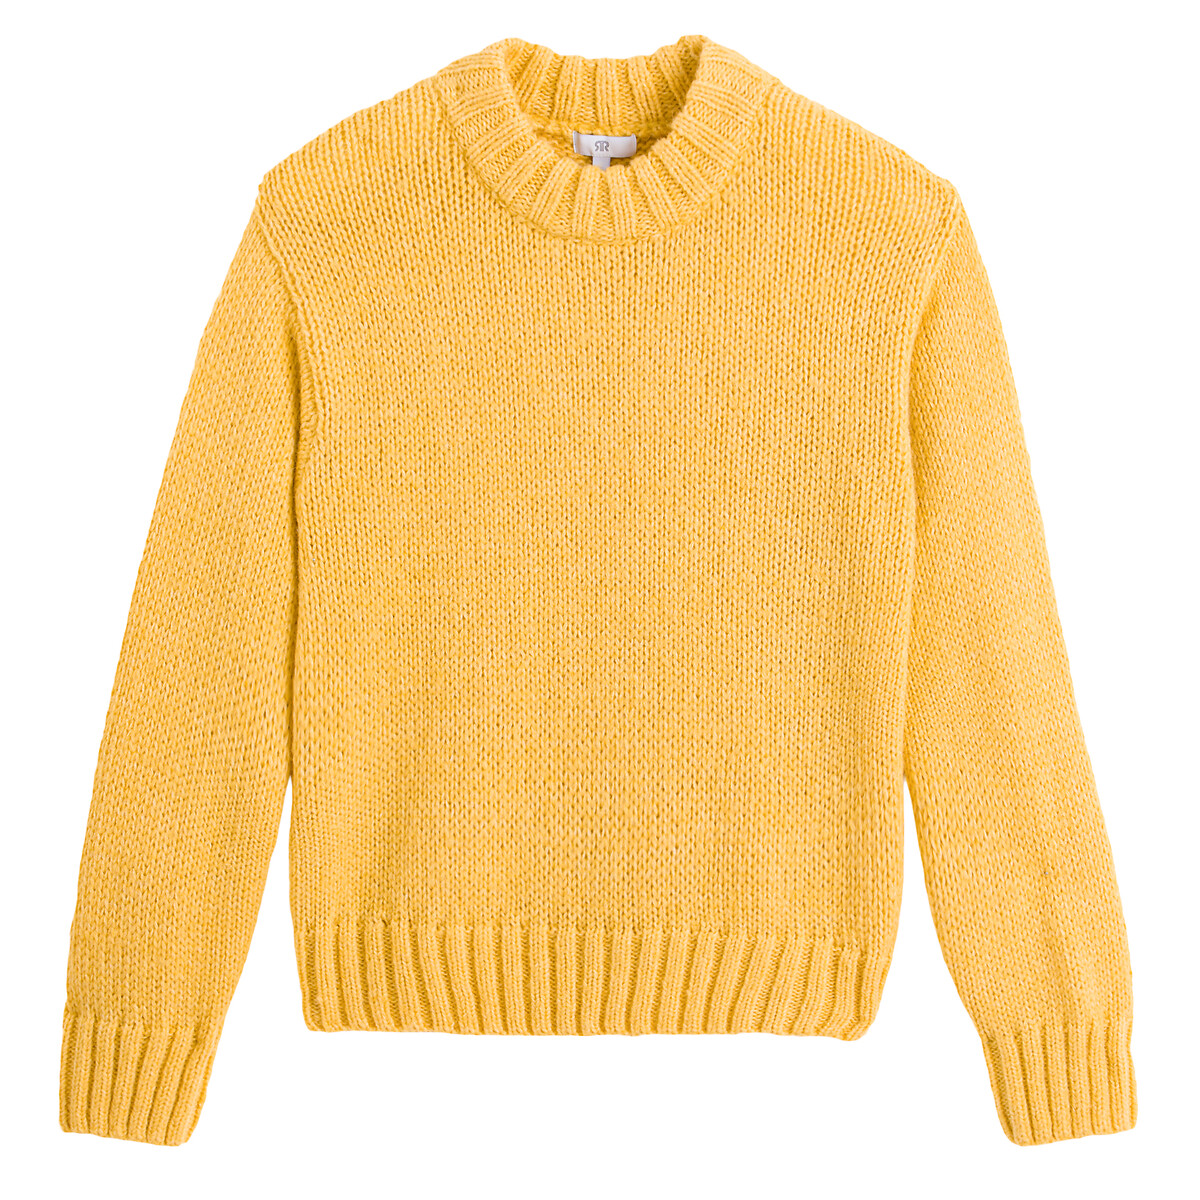 Пуловер LA REDOUTE COLLECTIONS Пуловер С воротником-стойкой XL желтый, размер XL - фото 5